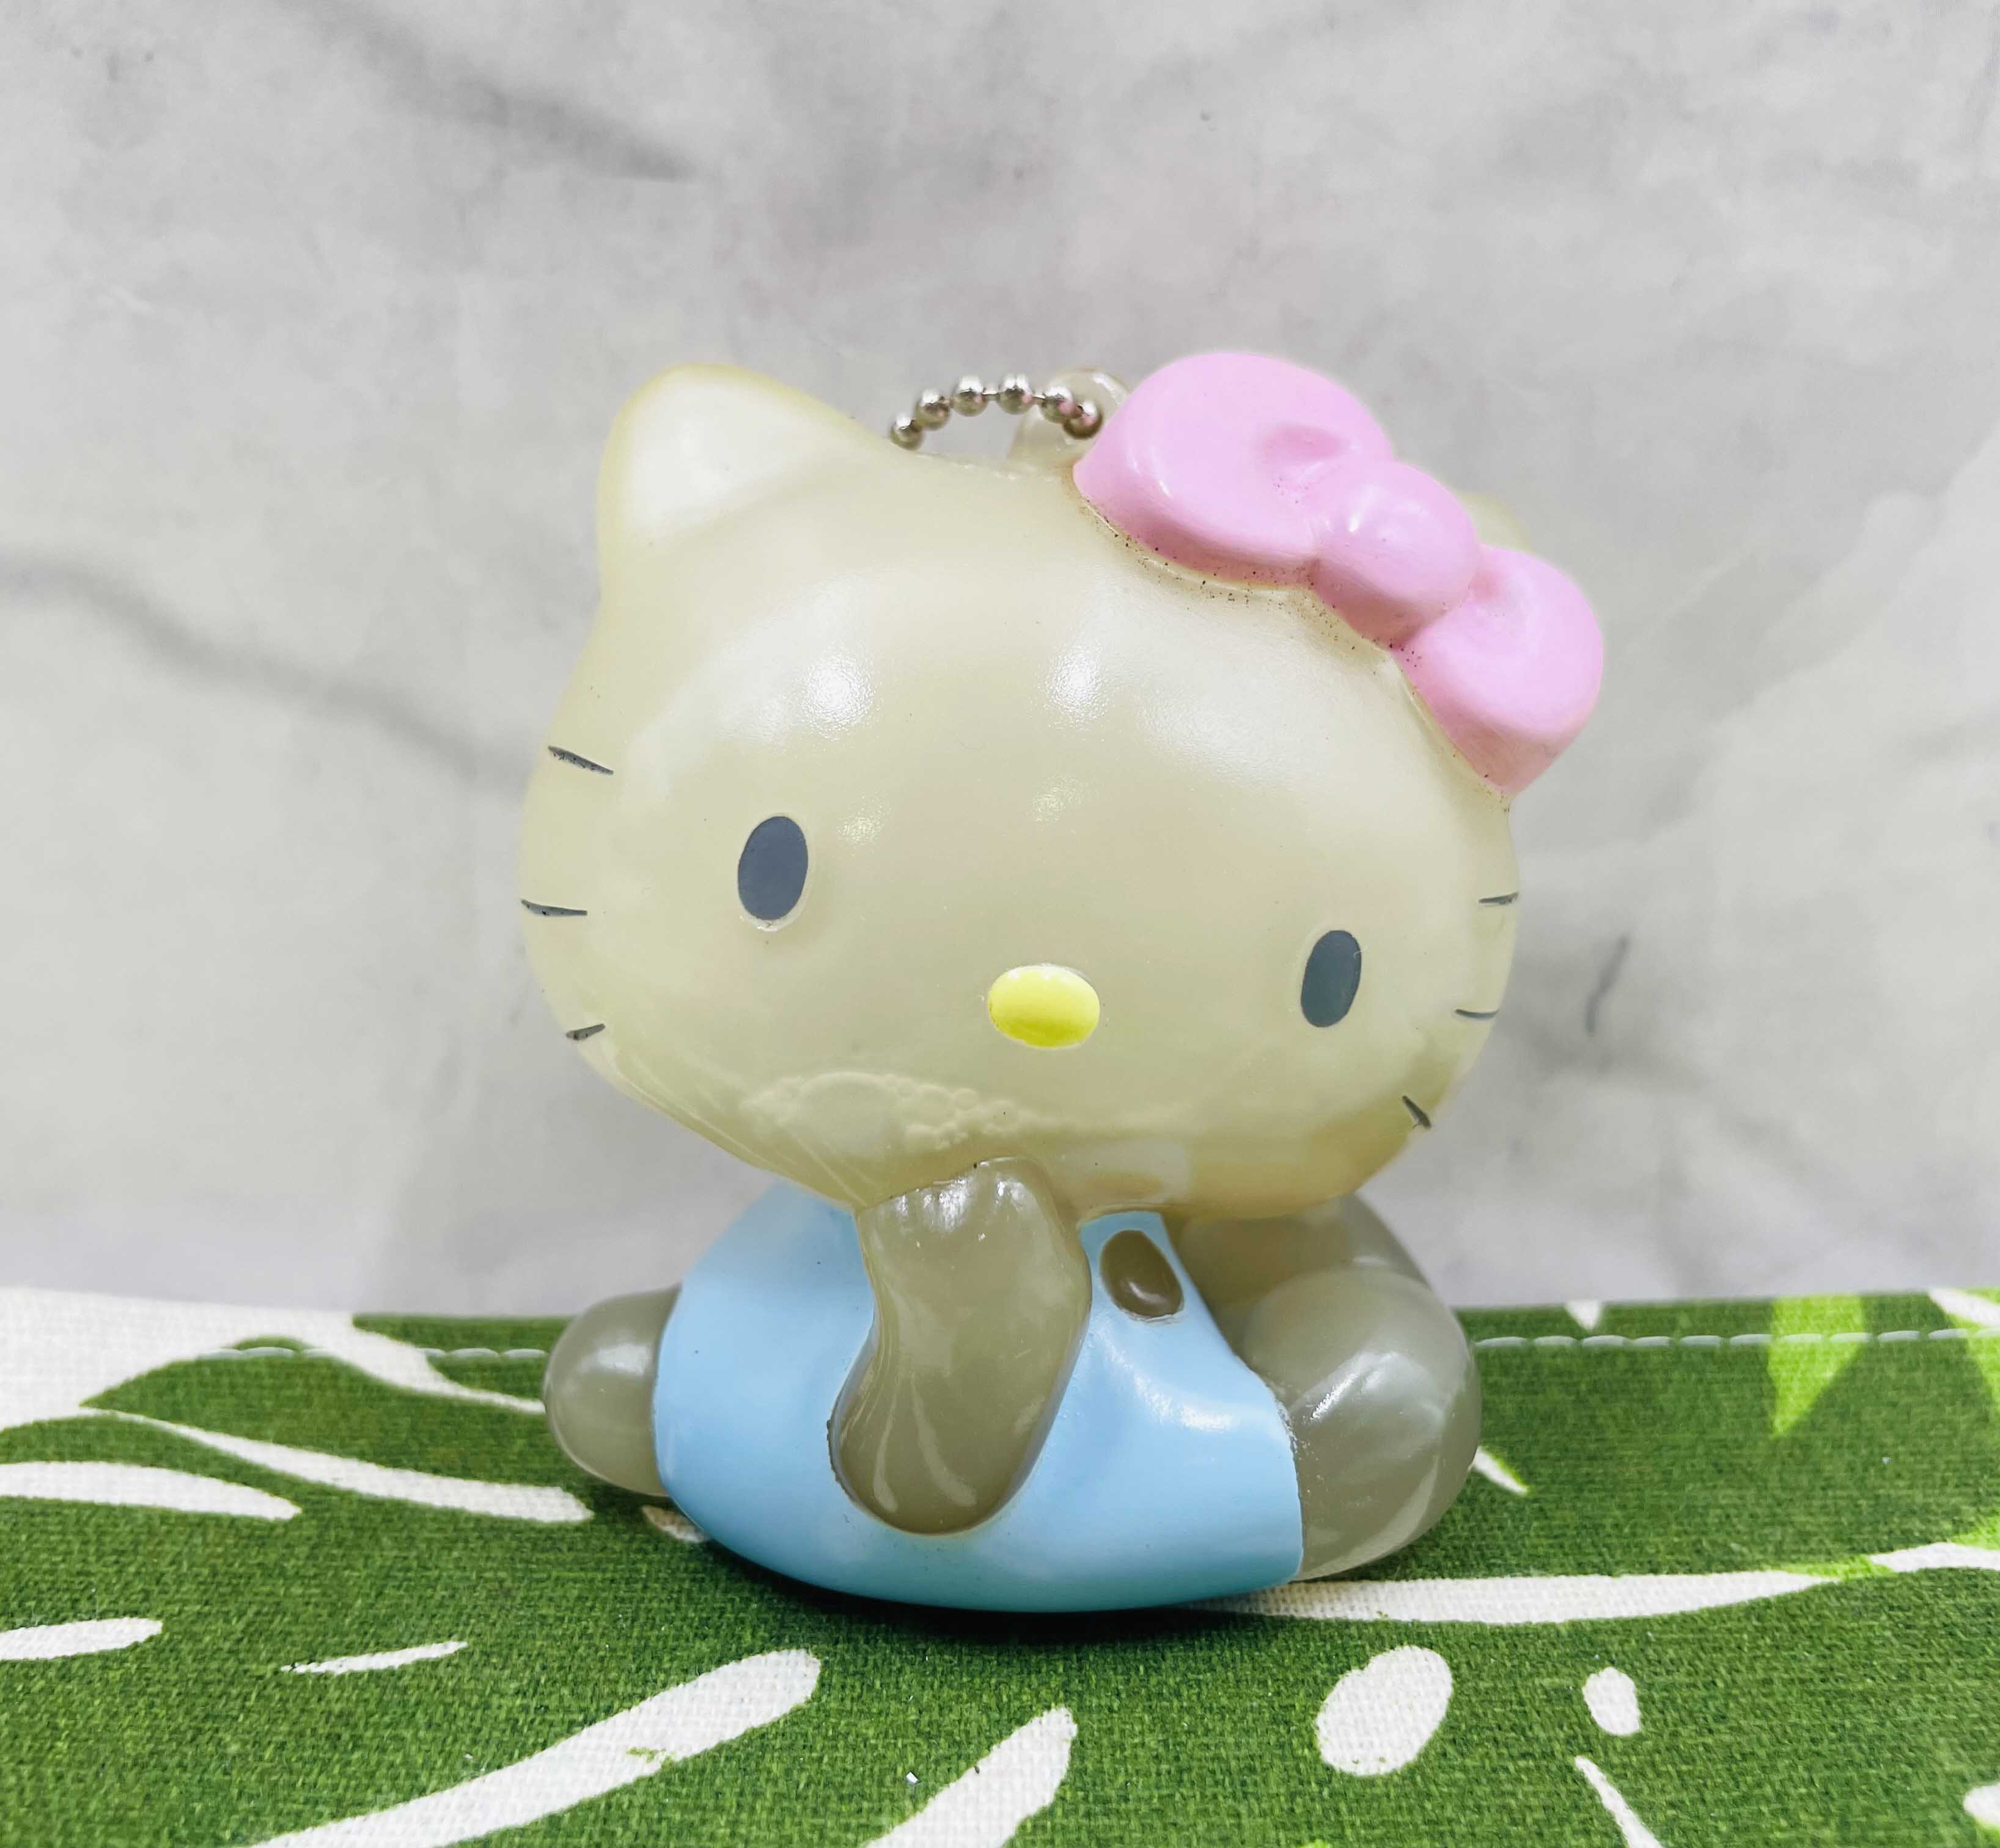 【震撼精品百貨】Hello Kitty 凱蒂貓~日本SANRIO三麗鷗 KITTY吊飾鎖圈-矽膠坐*13721